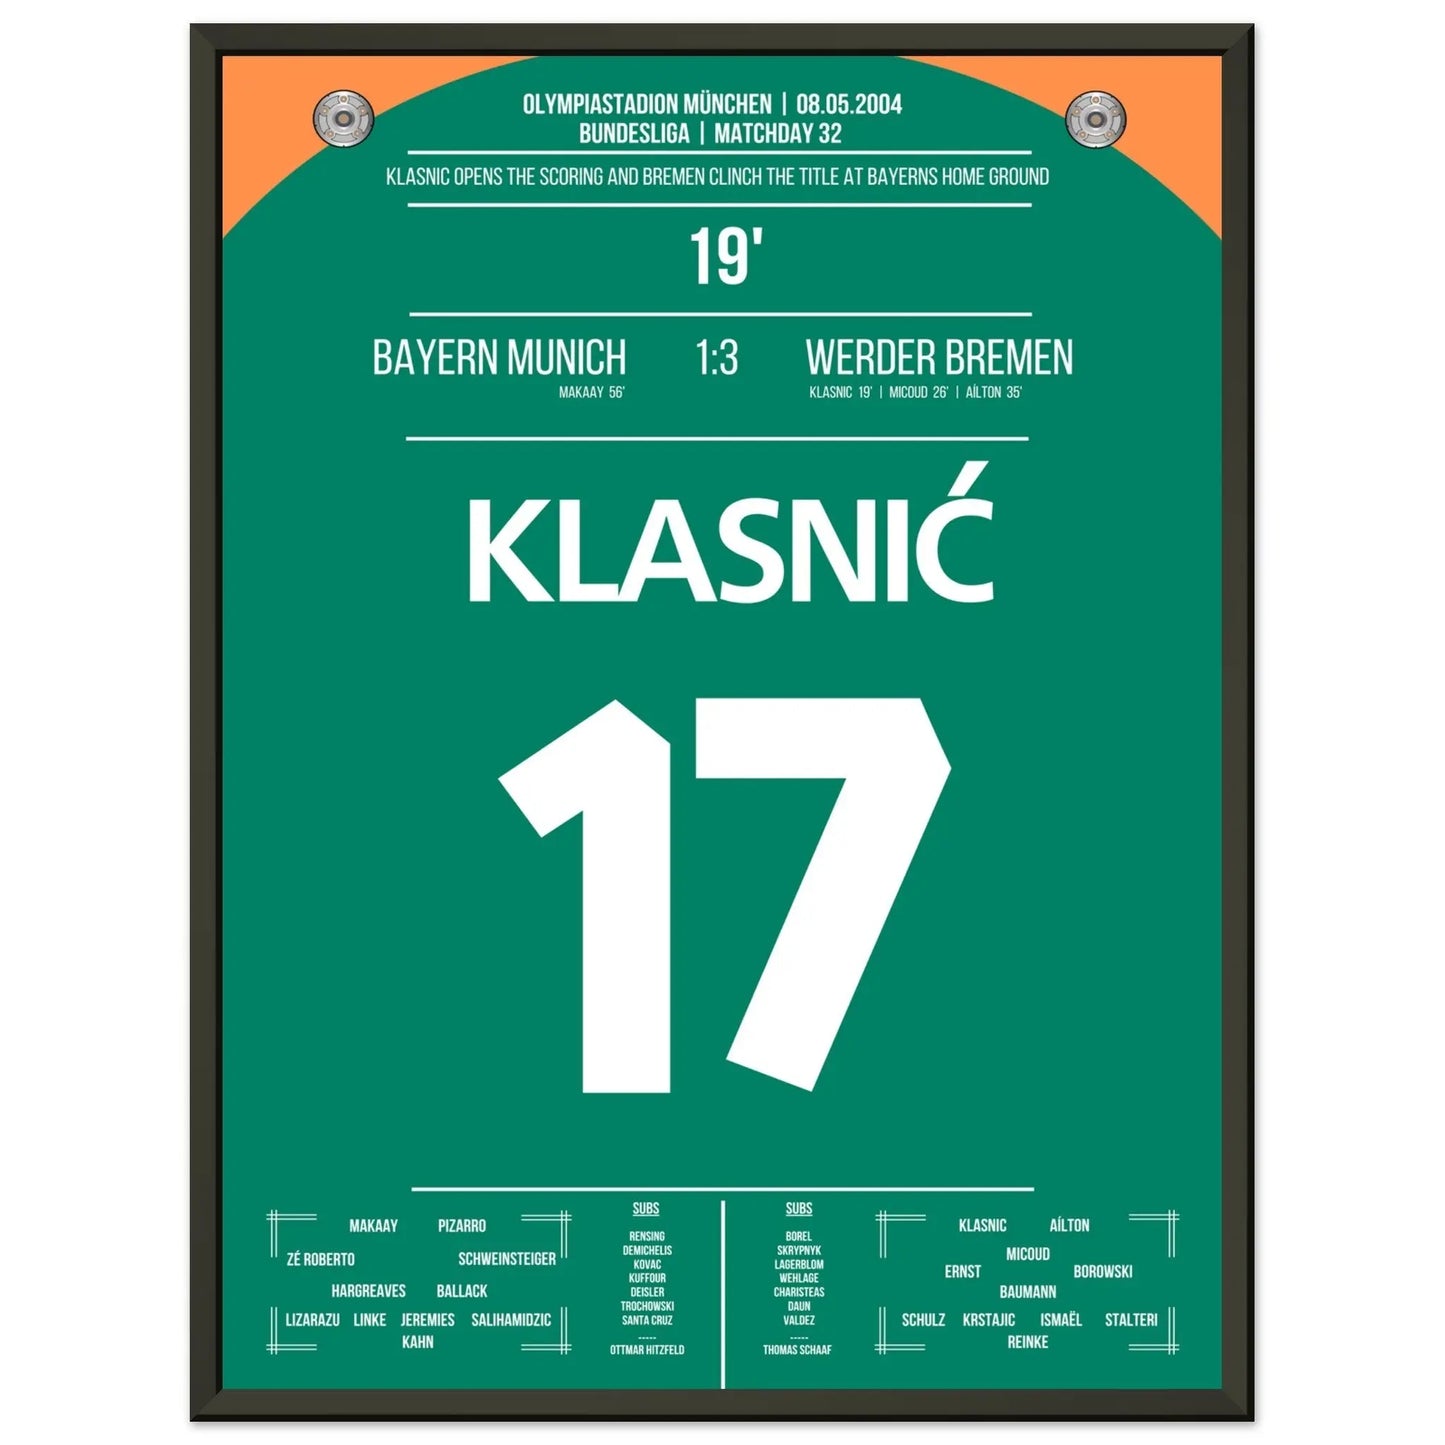 Klasnic's doel bij het winnen van het kampioenschap in München in 2004